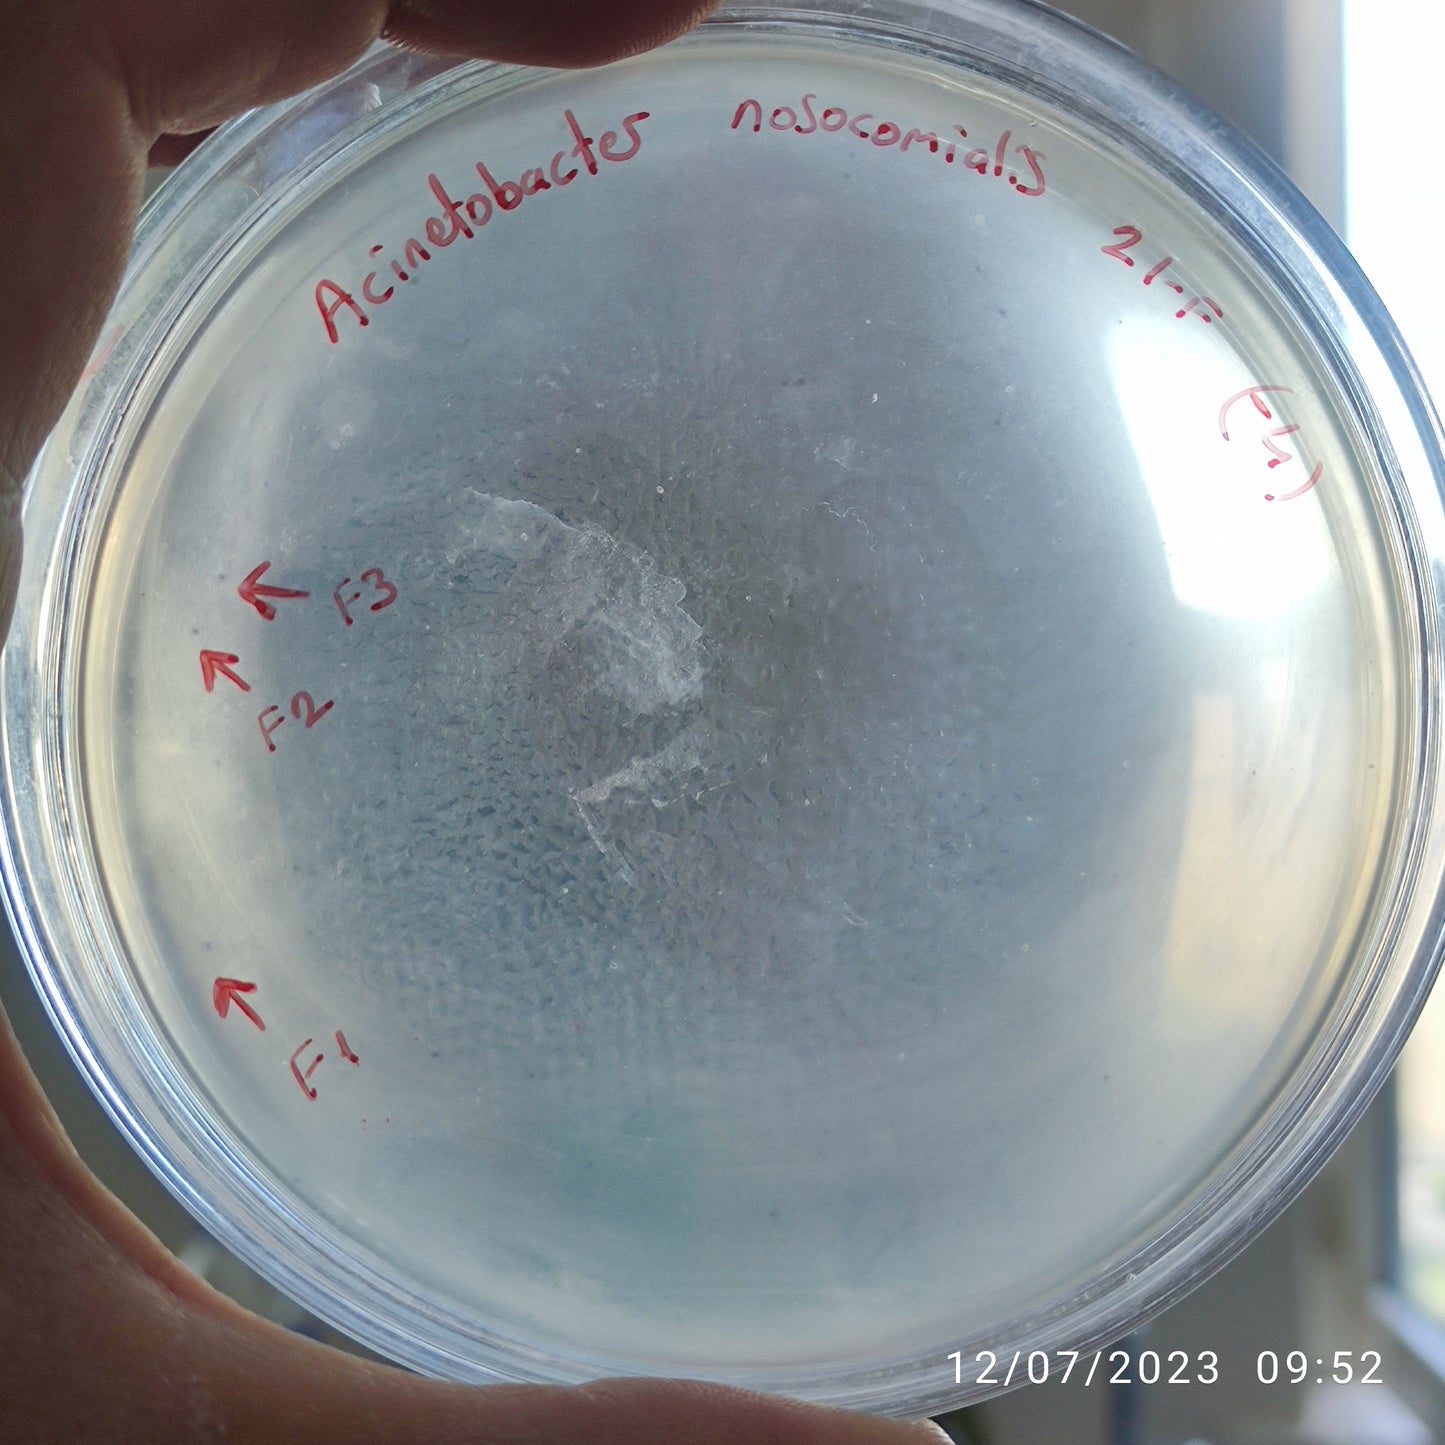 Acinetobacter nosocomialis bacteriophage 128021F